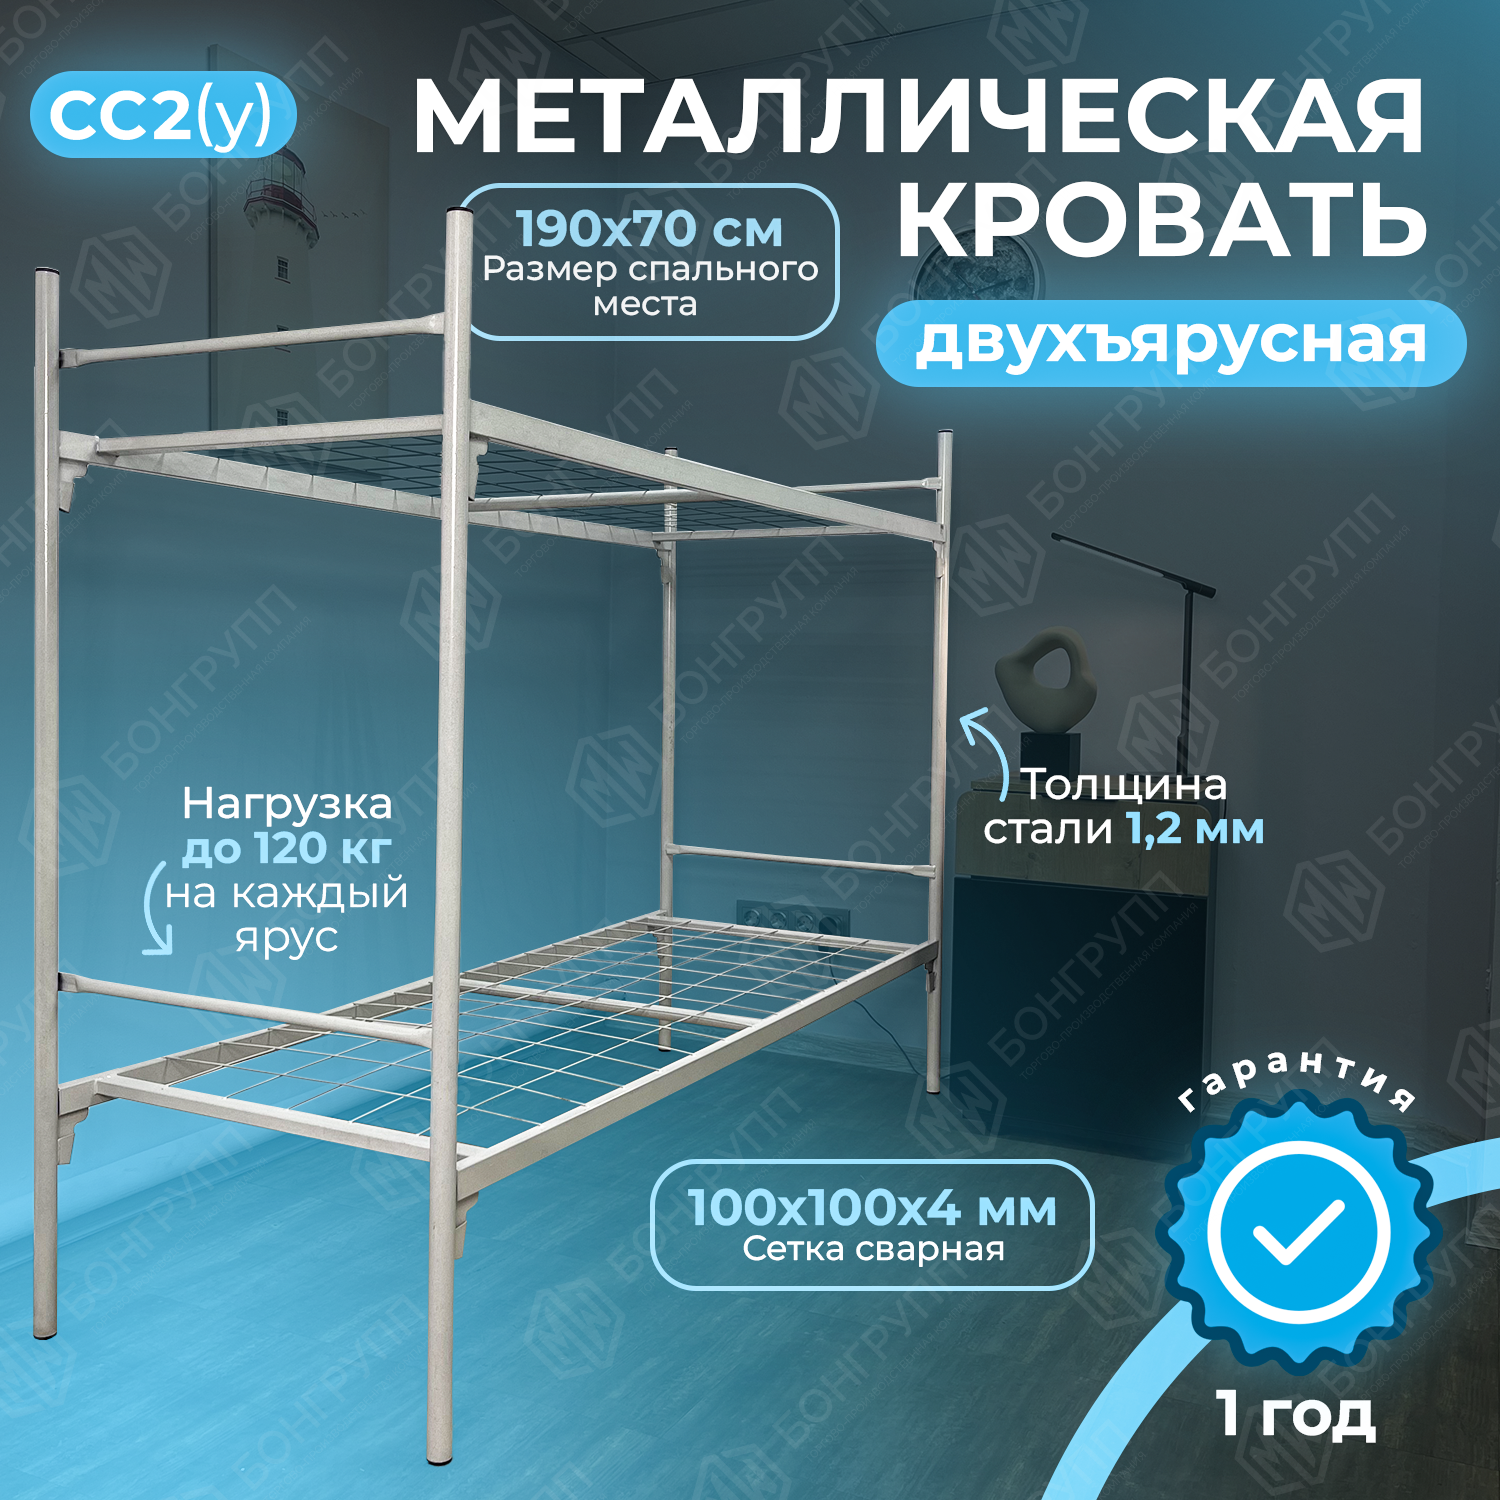 Кровать двухъярусная металлическая MW СС2 (у)